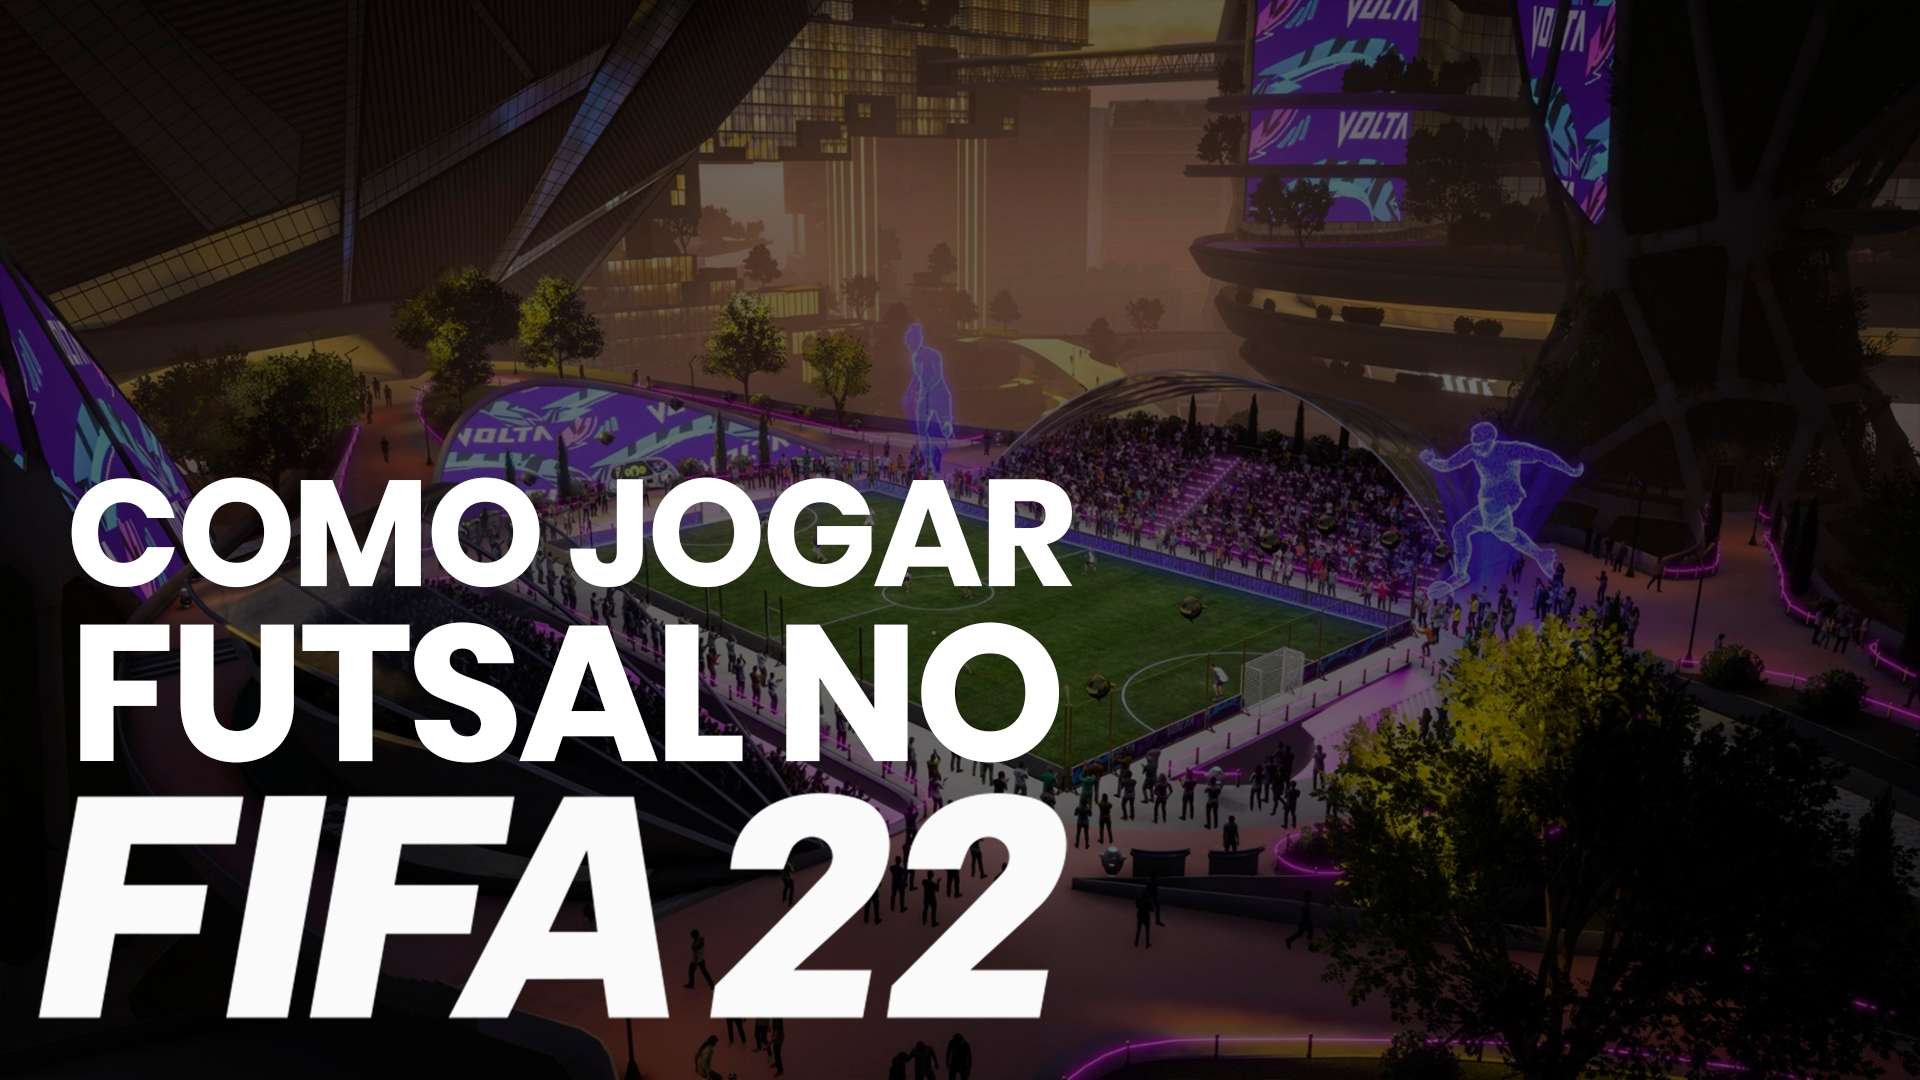 Futsal FIFA 22